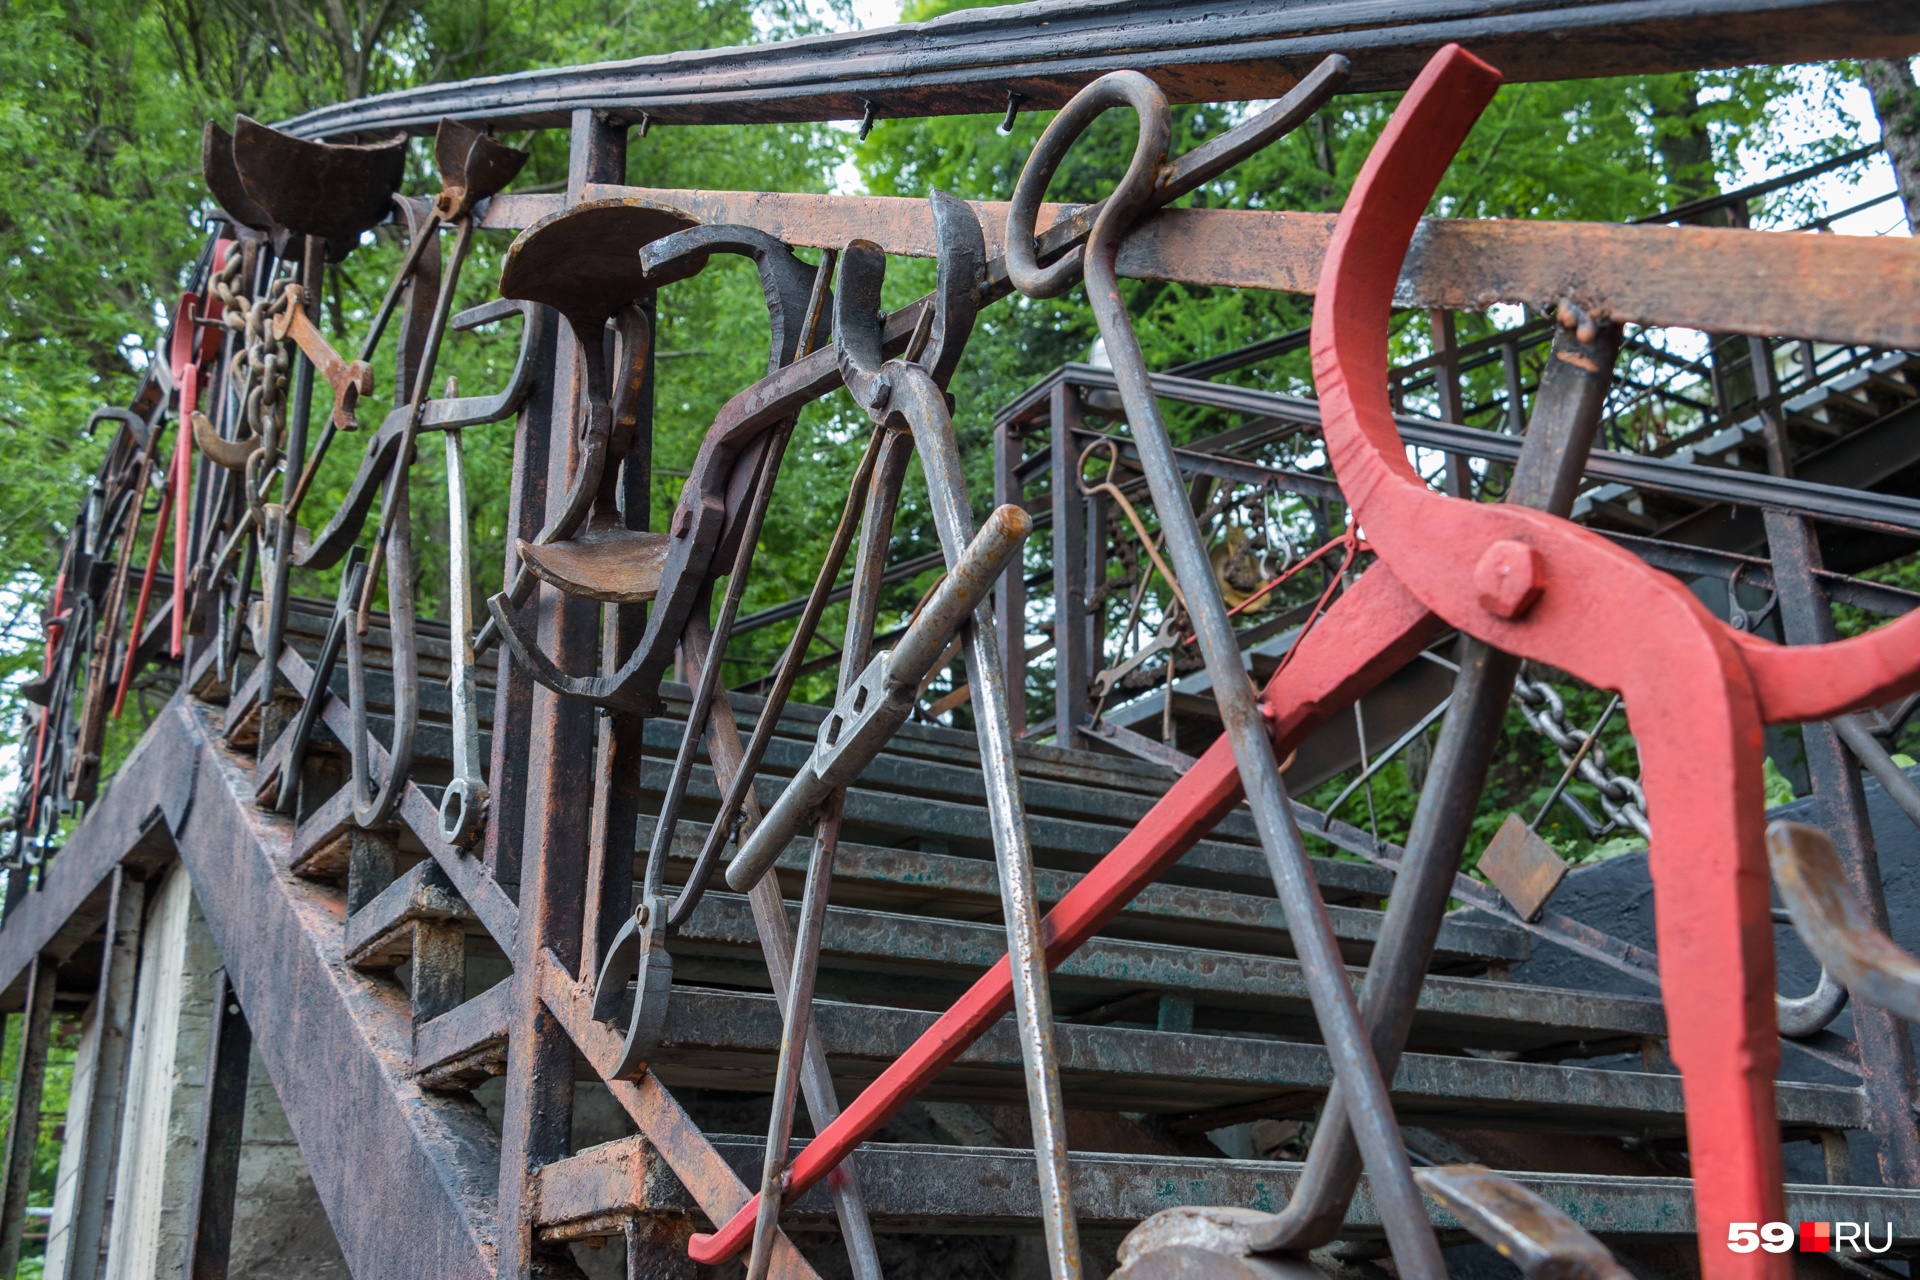 Уличная лестница декорирована бывшими инструментами